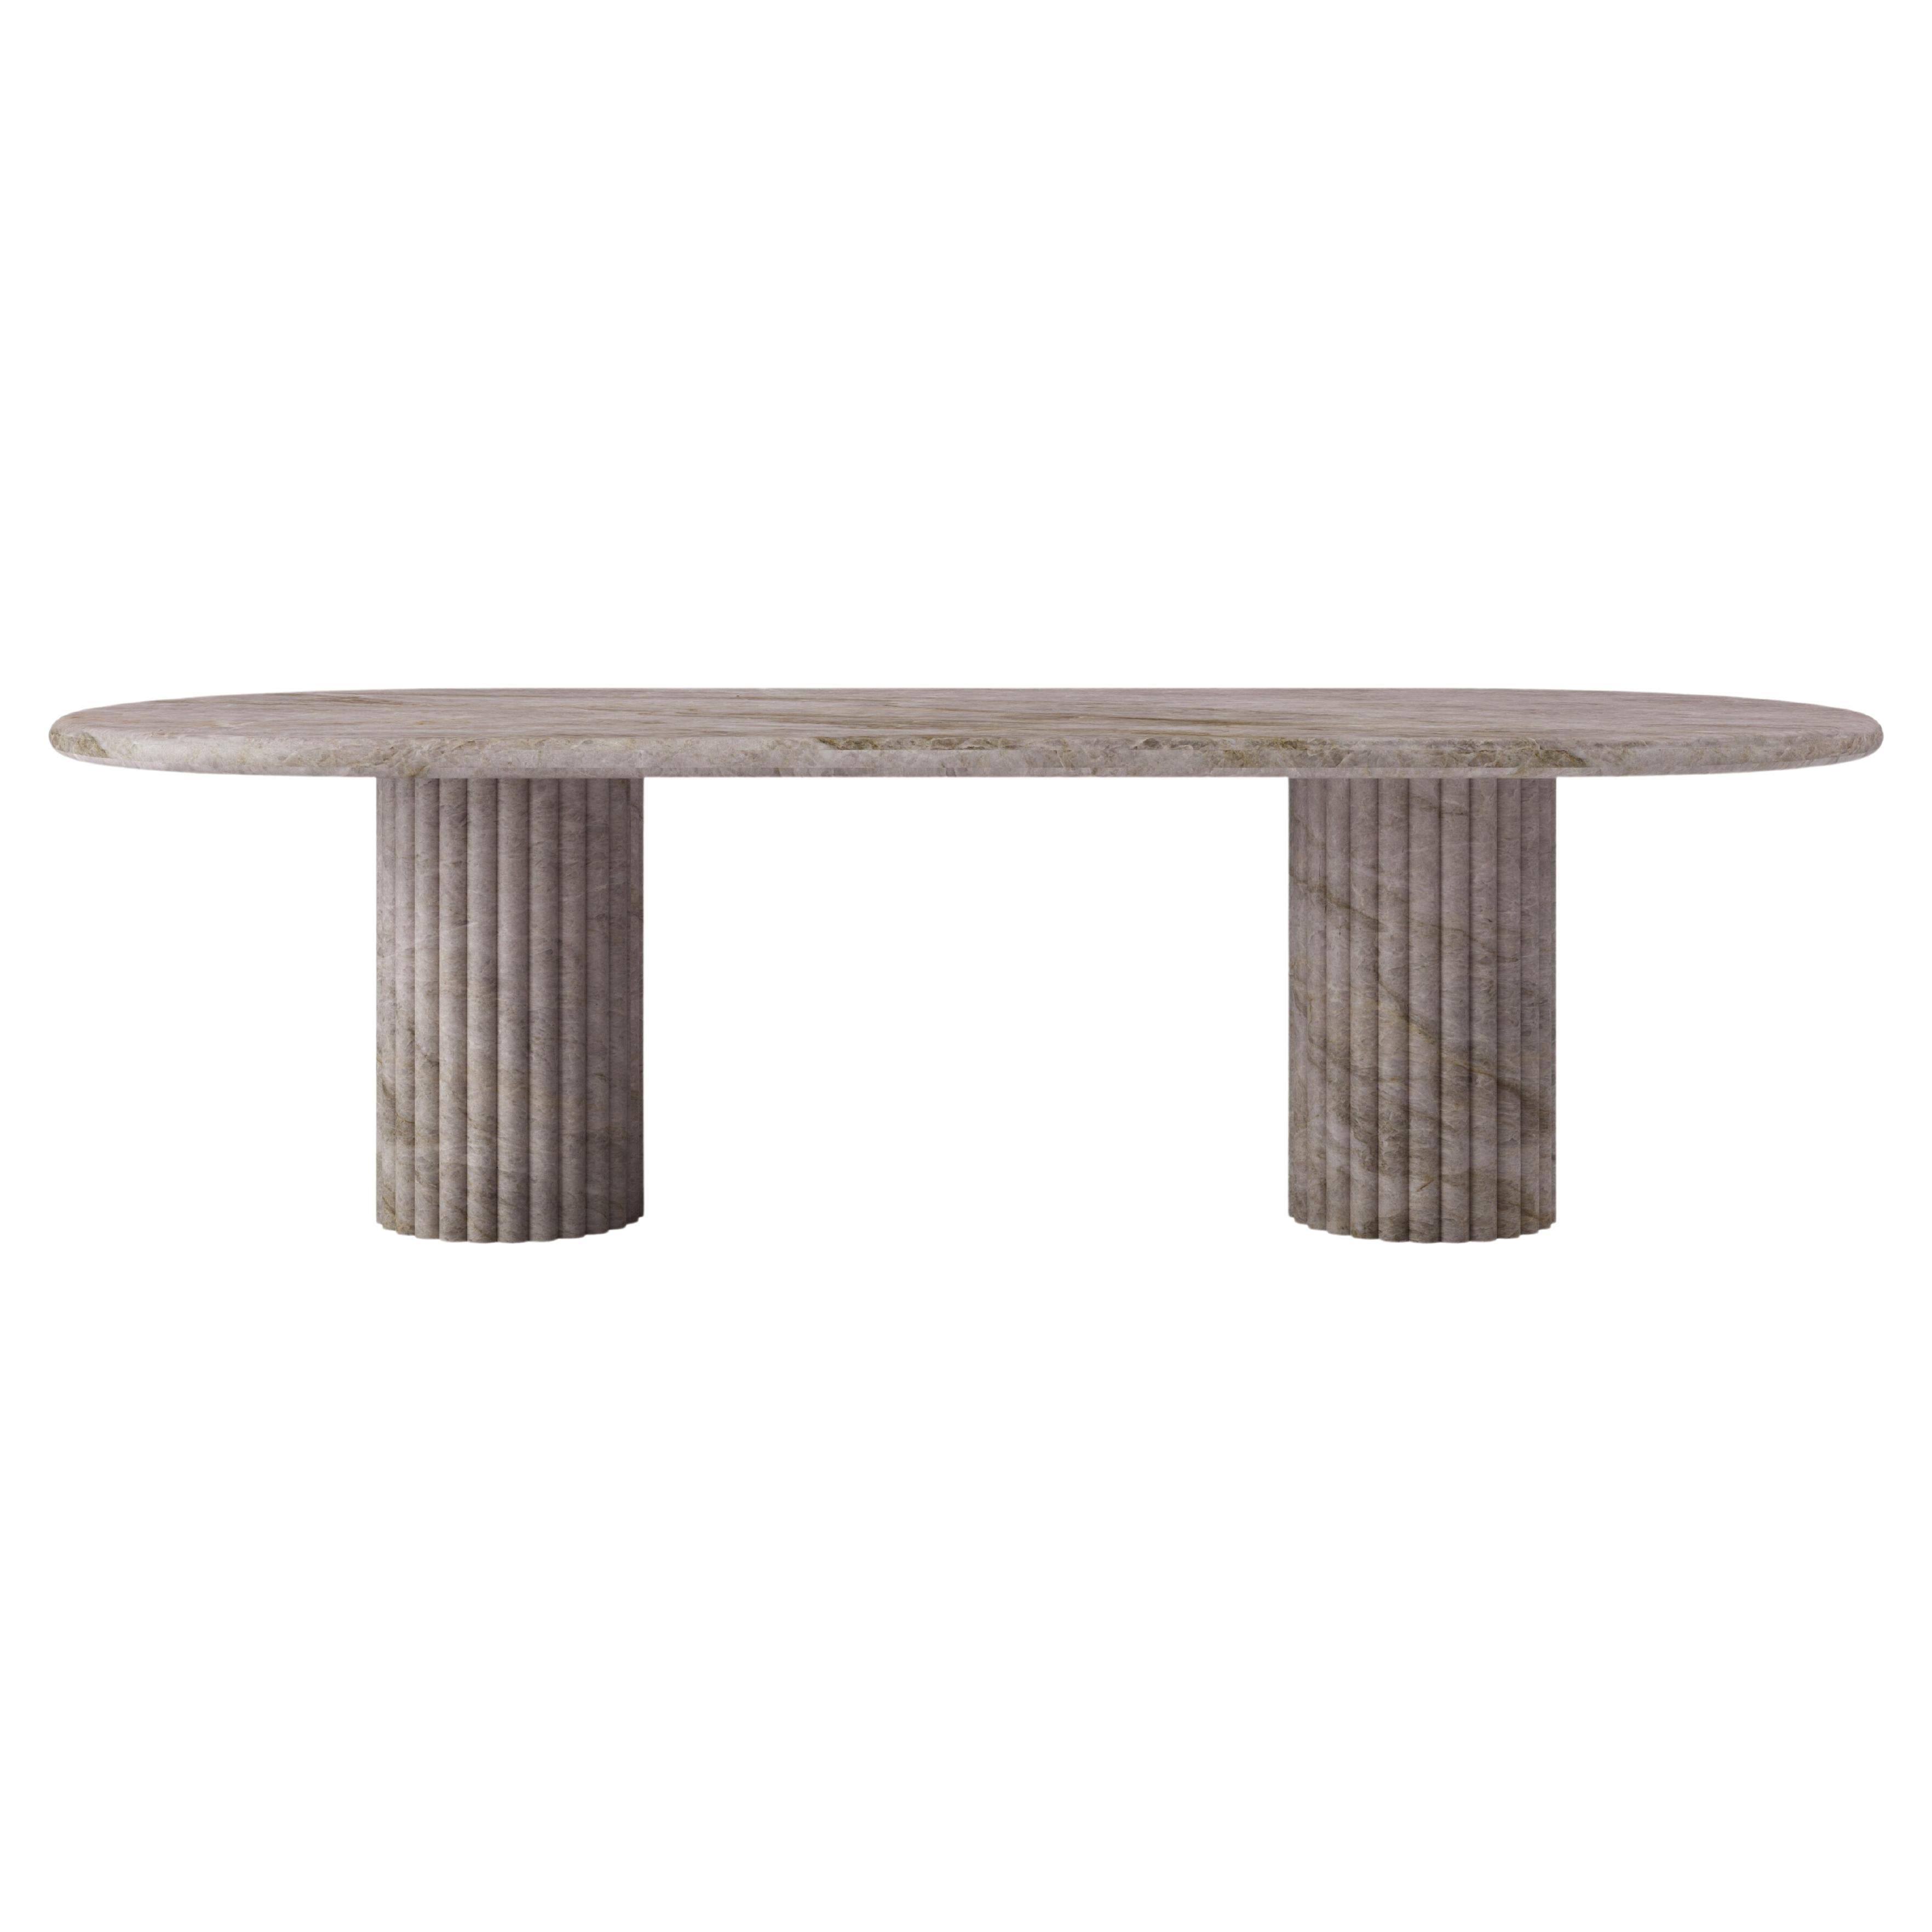 FORM(LA) Fluta Oval Dining Table 96”L x 42”W x 30”H Taj Mahal Quartzite